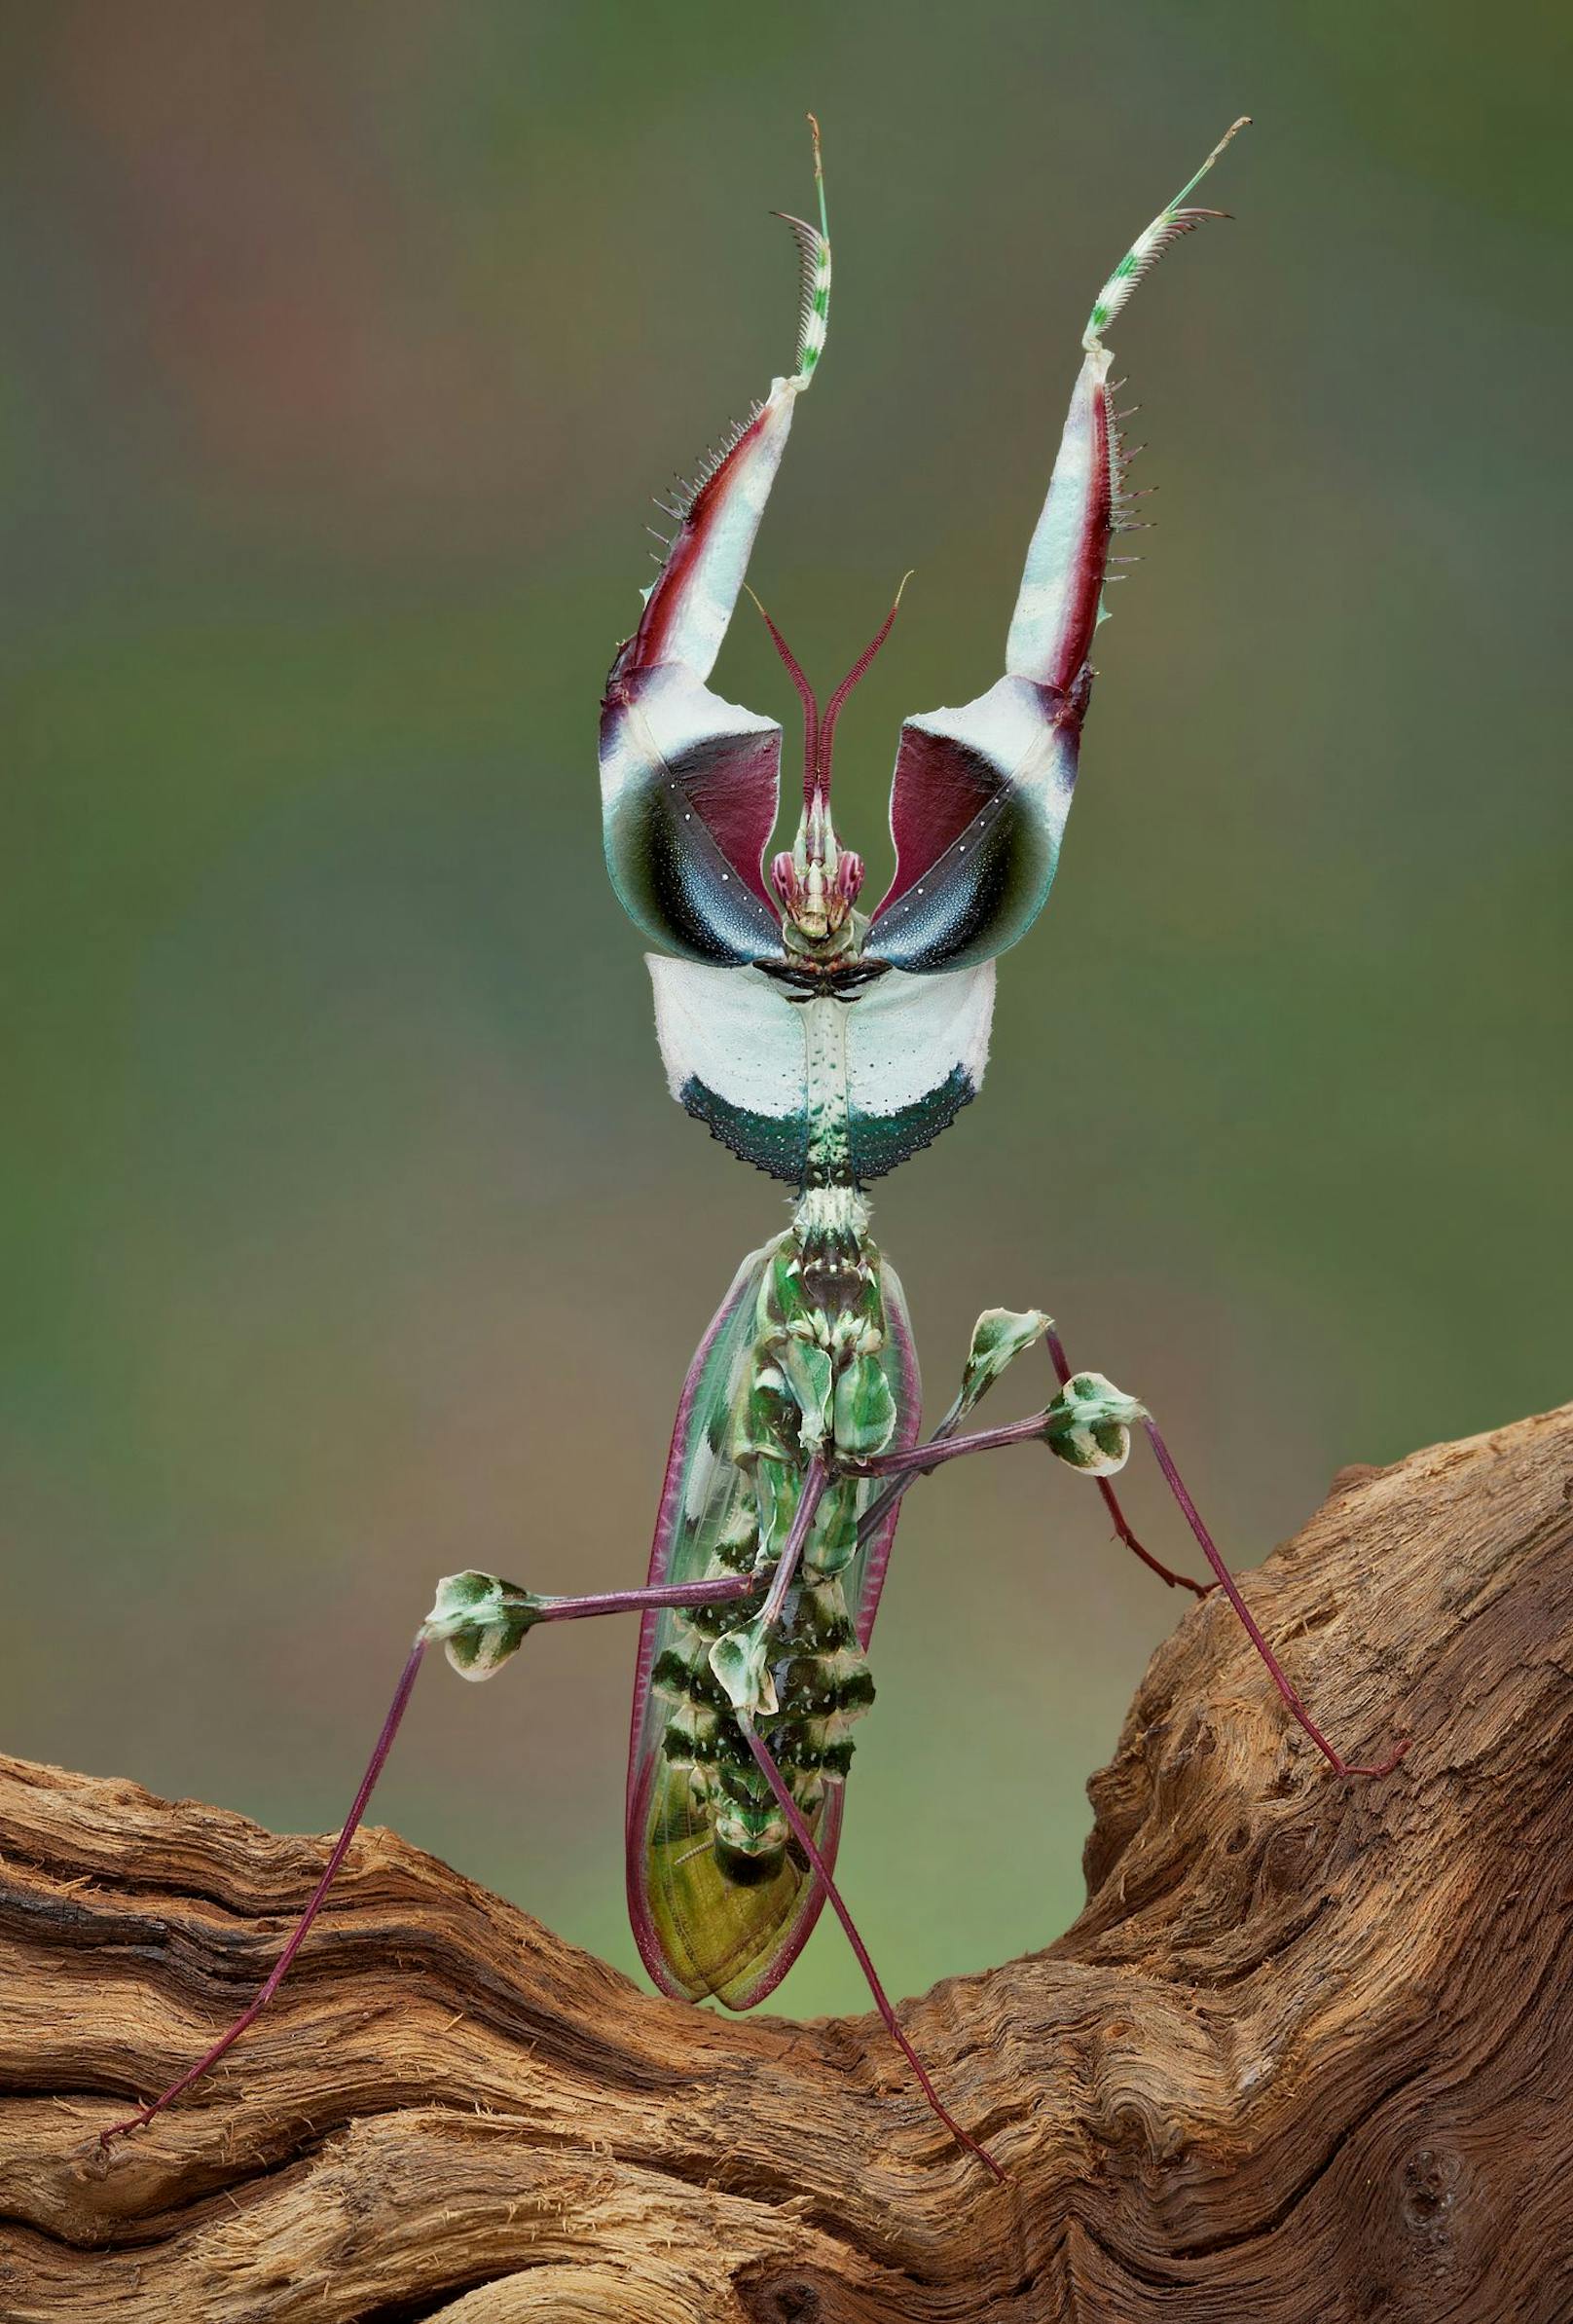 Hier sieht man ein Männchen in der Drohhaltung. Man spricht bei der Teufelsblume auch von der "Königin der Fangschrecken". 